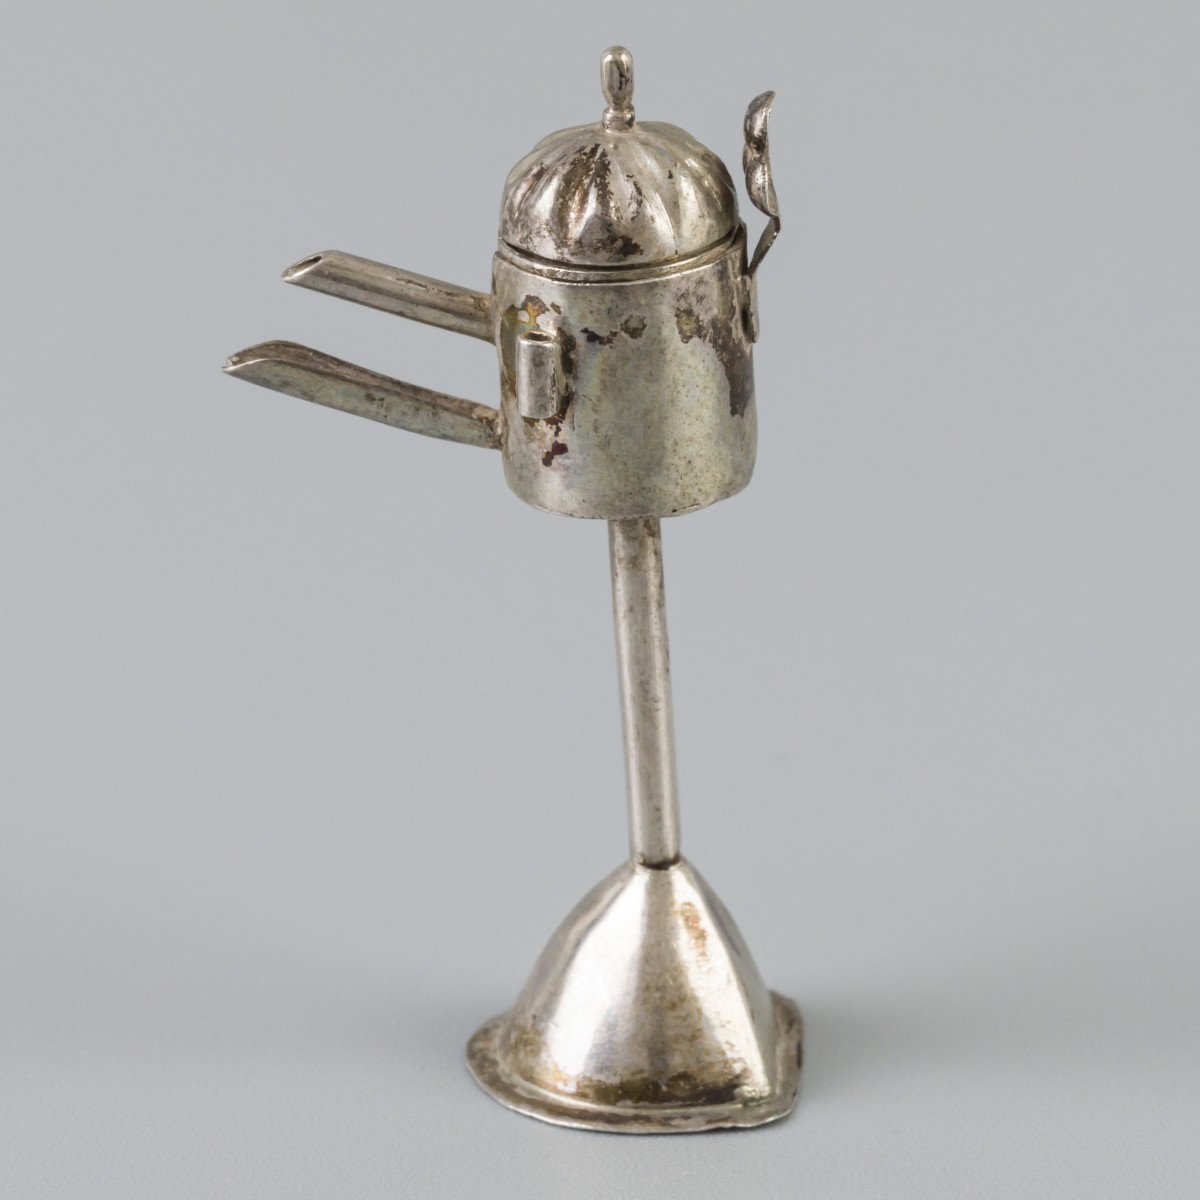 Miniatuur olielamp / snotneus (18e-eeuws ?) zilver.